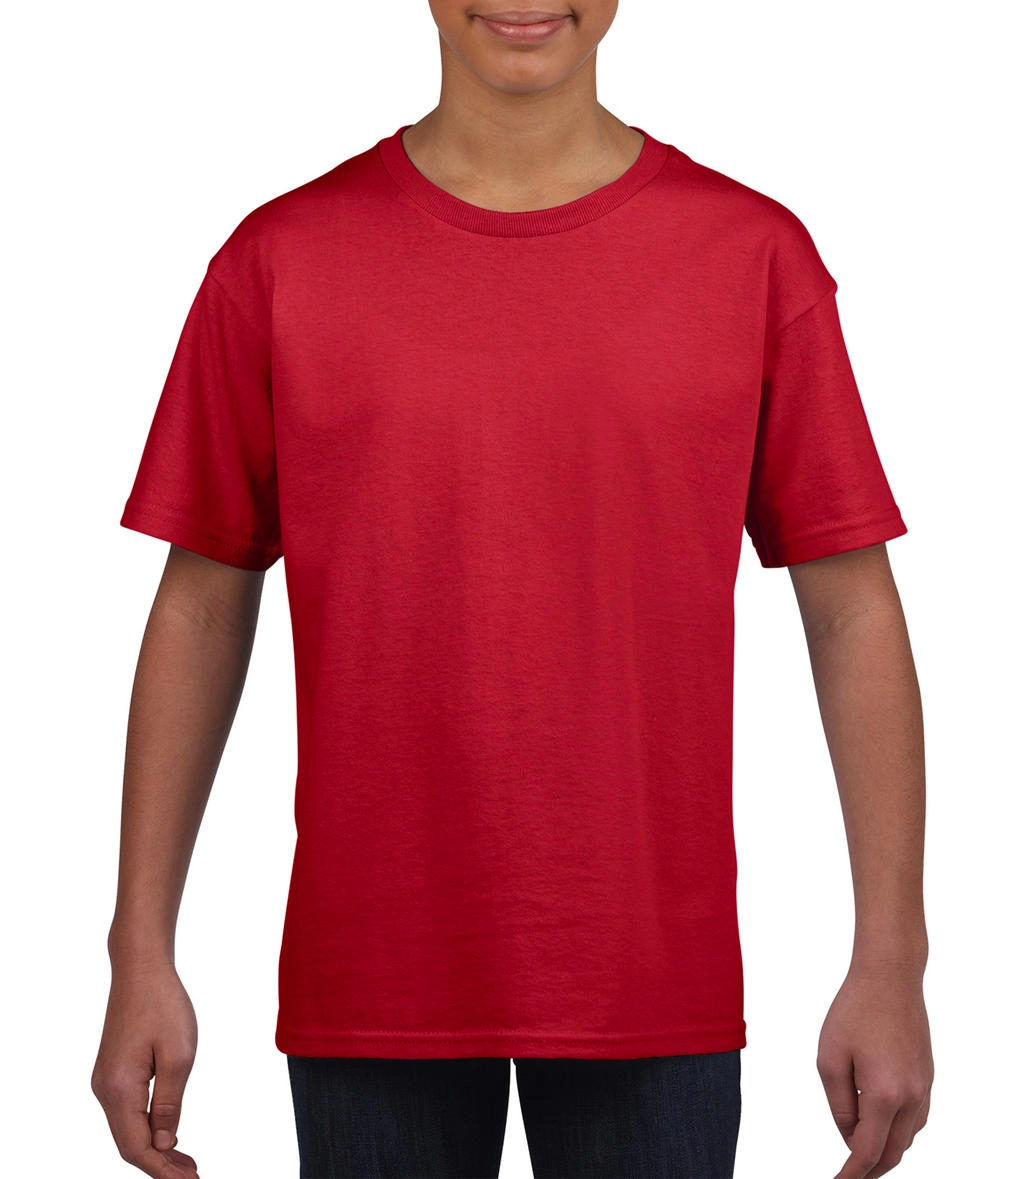 Softstyle® Youth T-Shirt zum Besticken und Bedrucken in der Farbe Red mit Ihren Logo, Schriftzug oder Motiv.